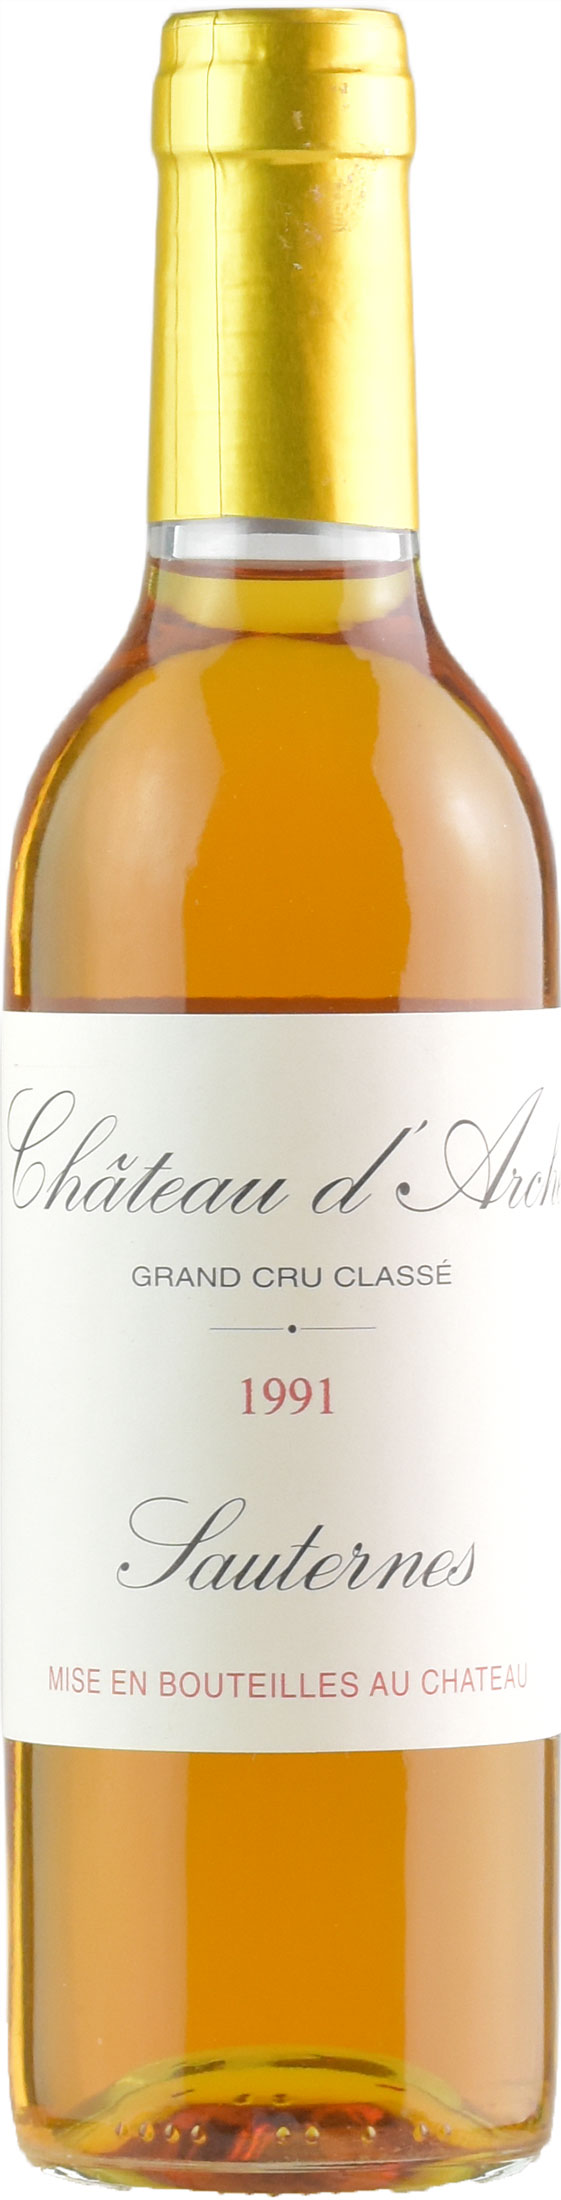 Chateau d%27Arche Grand Cru Classé de Sauternes 0,375L 1991